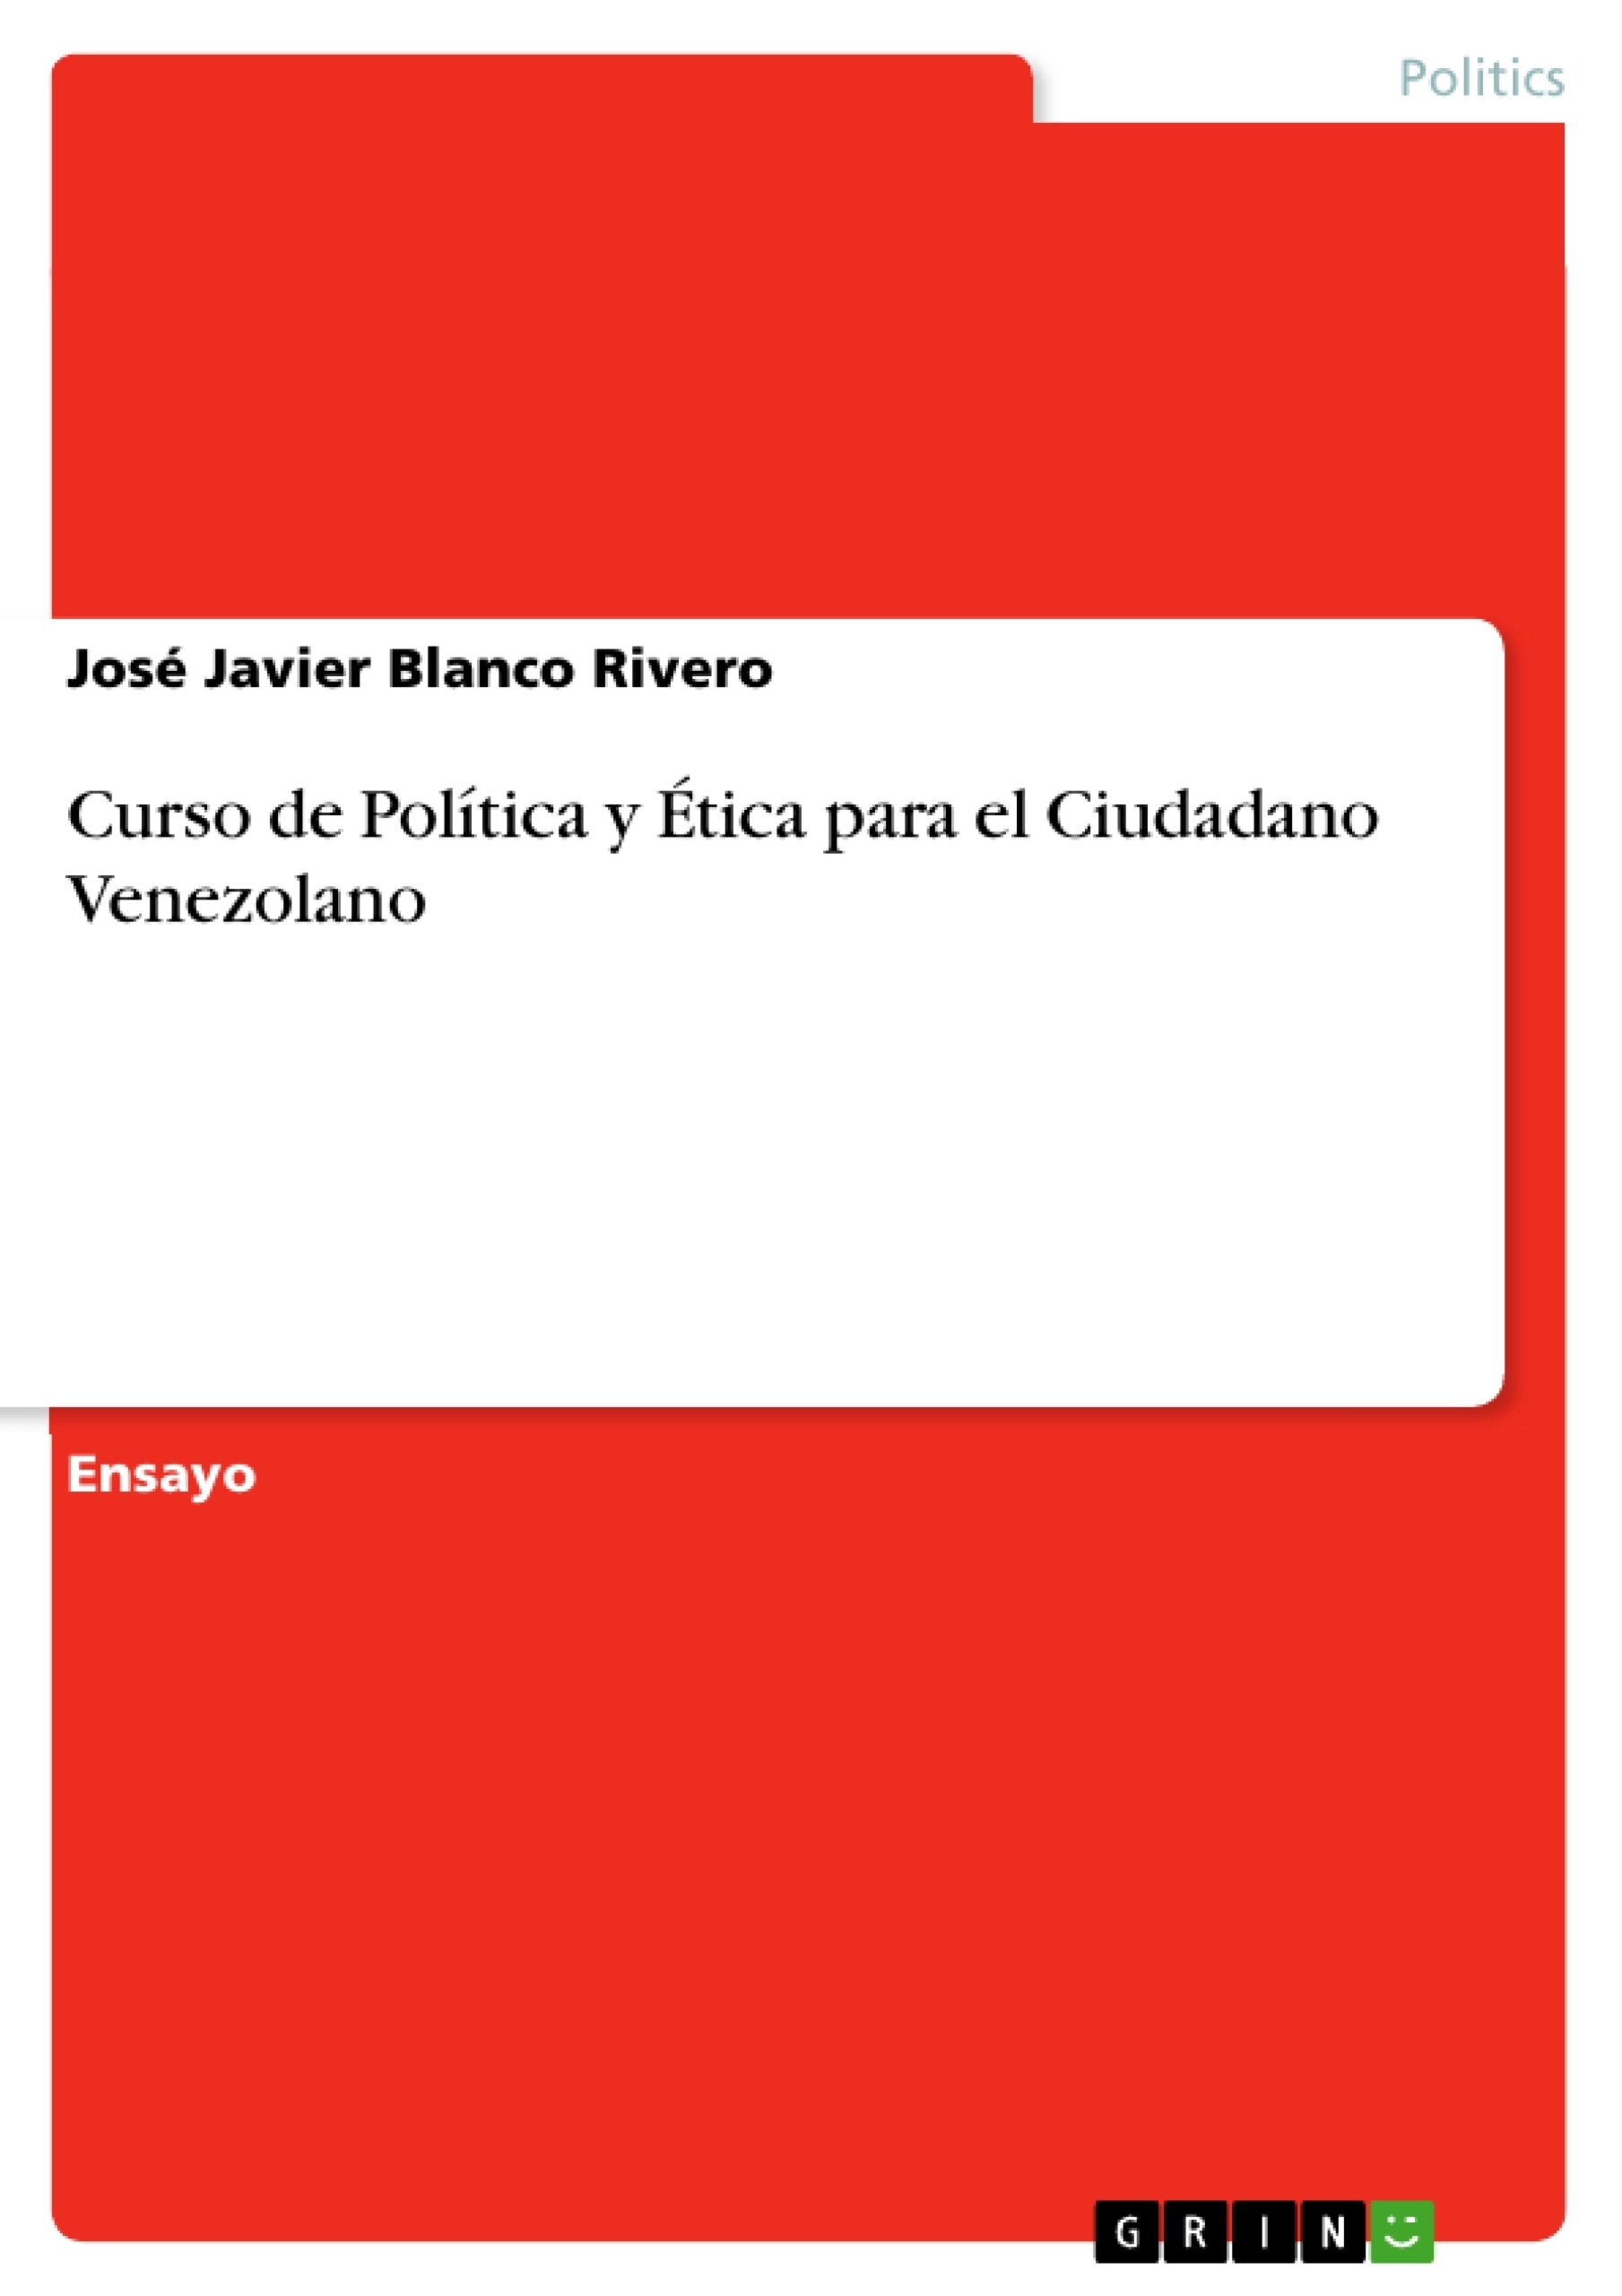 Título: Curso de Política y Ética para el Ciudadano Venezolano